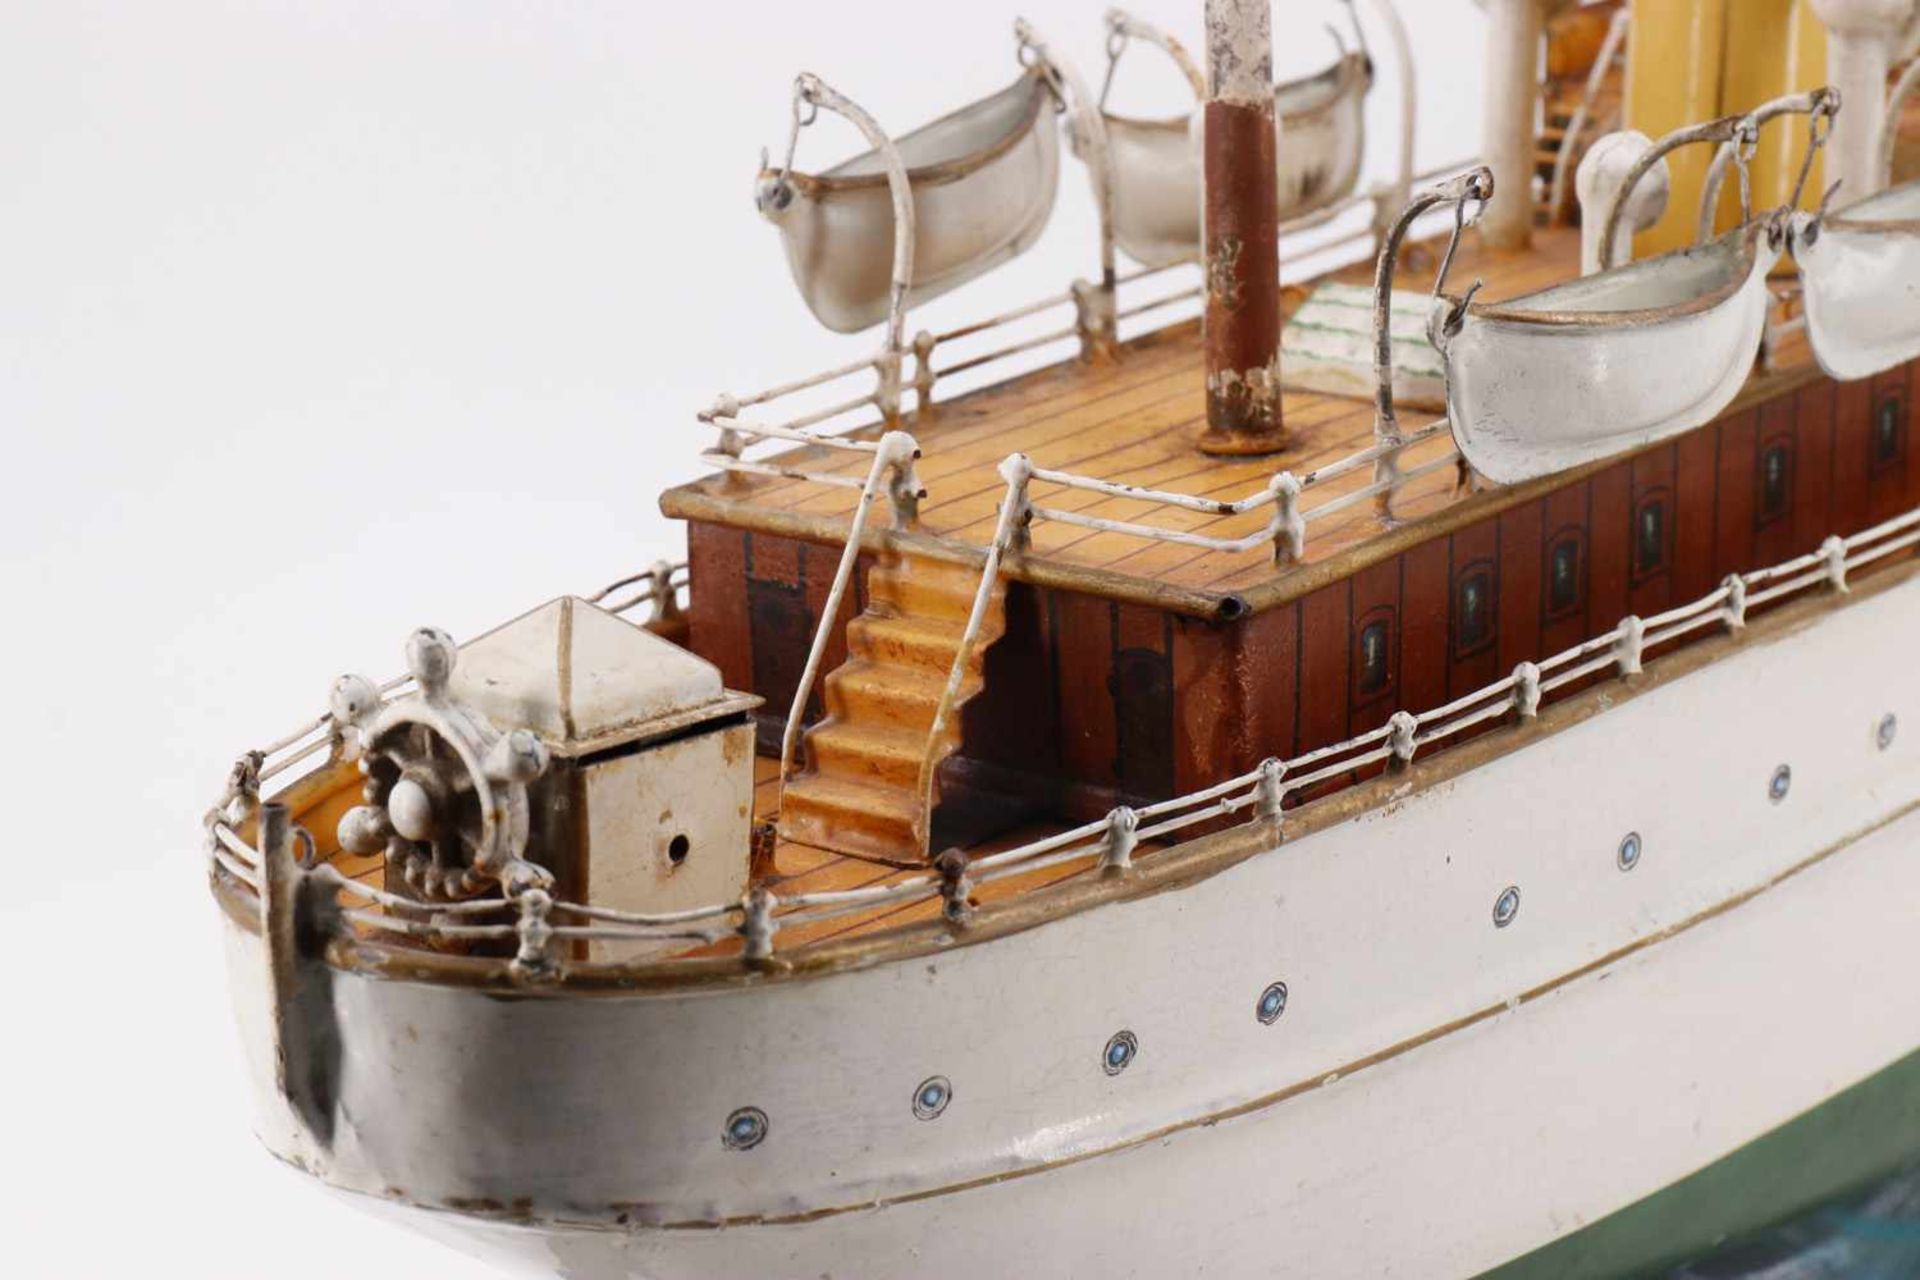 Märklin Yacht "Jolanda" 5064/62, handlackiert, Uhrwerk intakt, Vordach ergänzt, auf neuem Schlitten, - Bild 4 aus 6